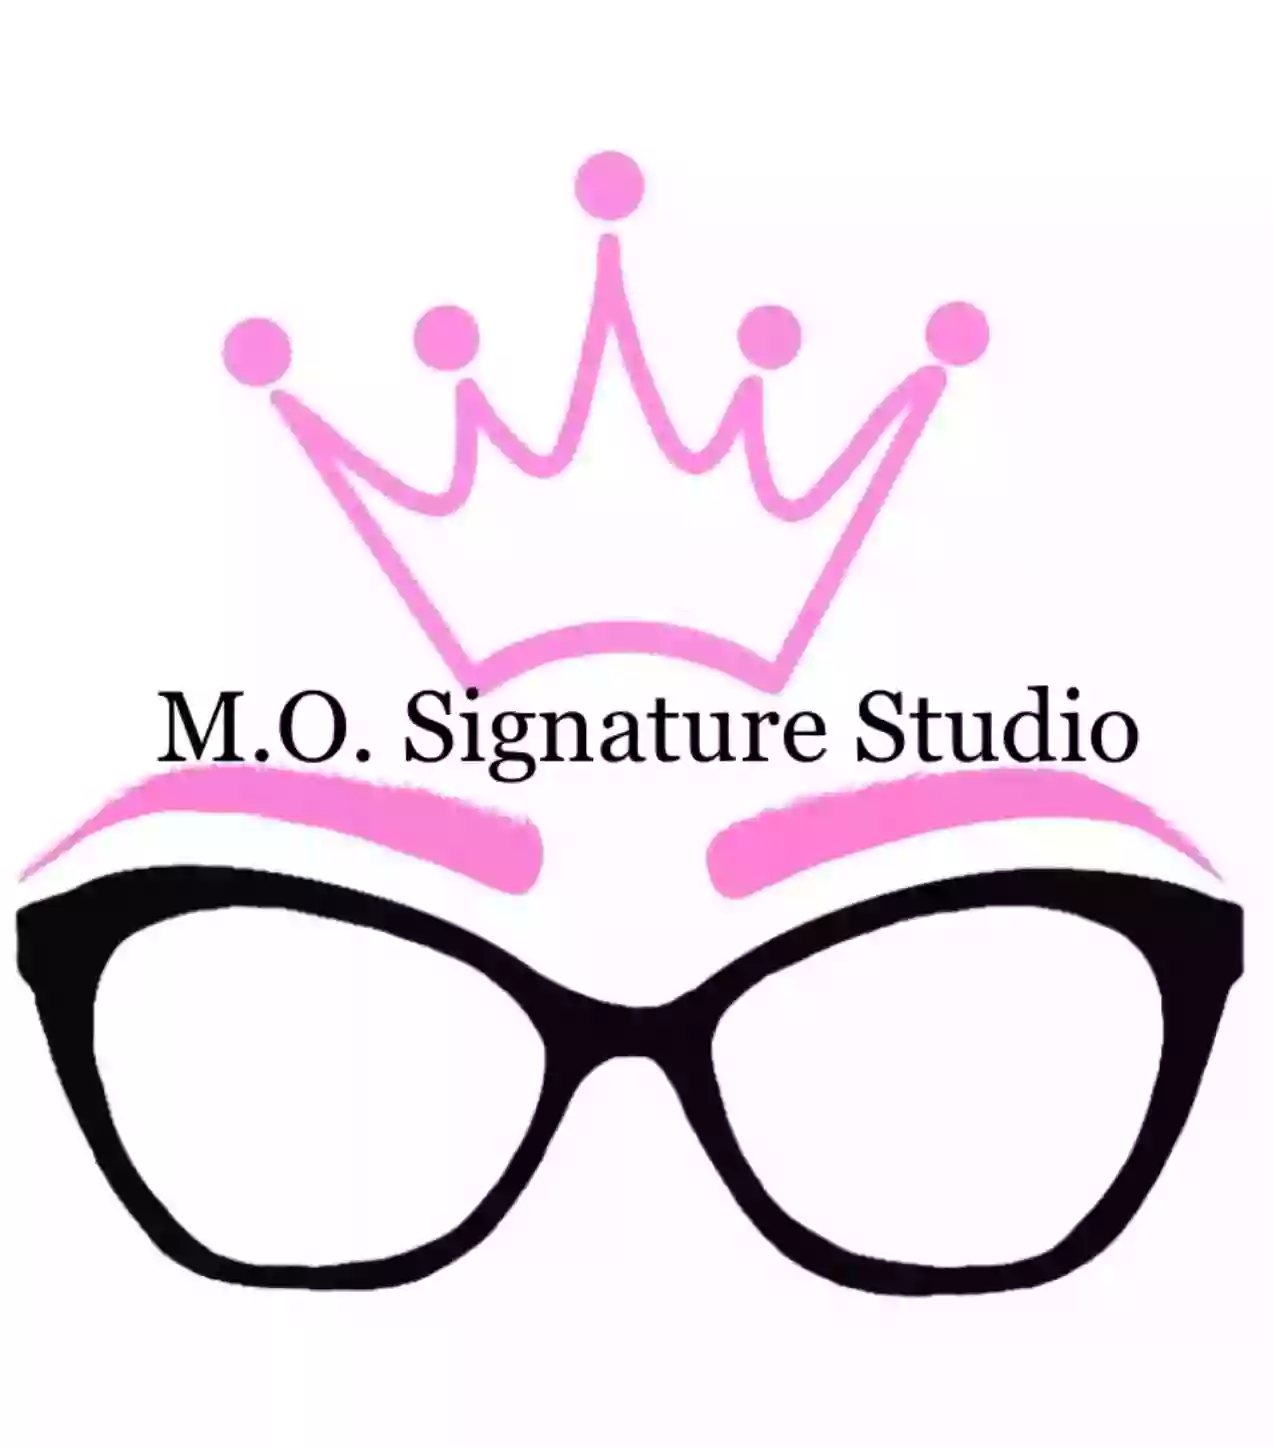 M.O. Signature Studio